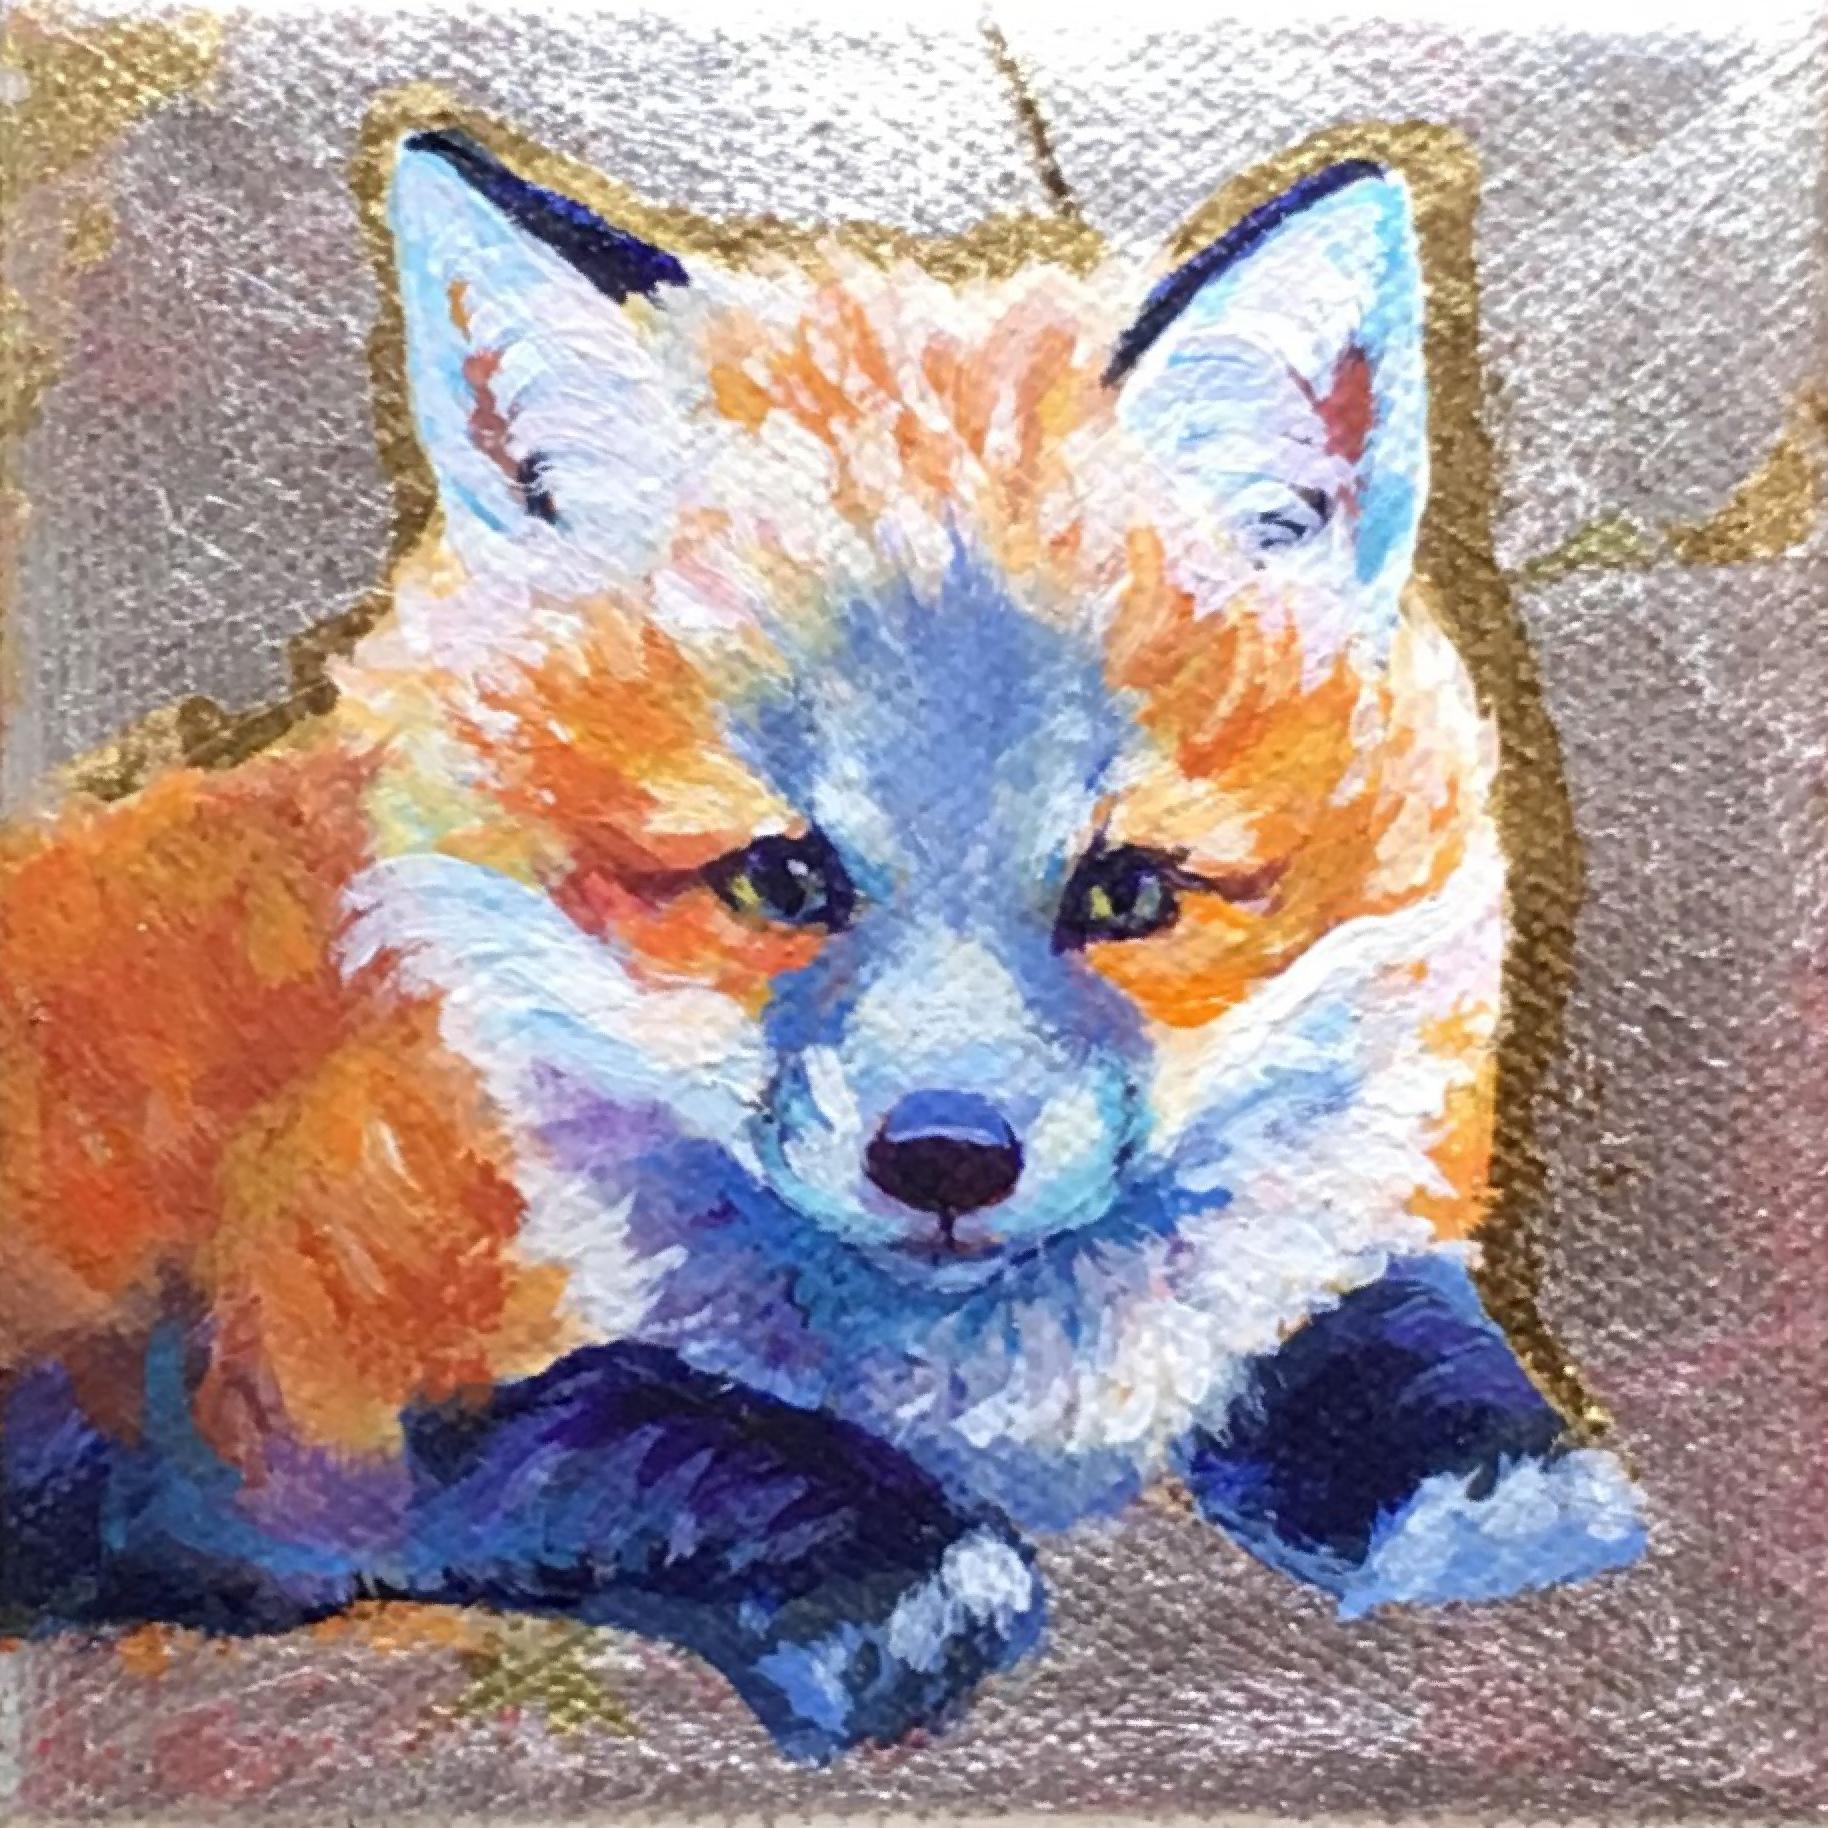 Red Fox Cub Cuteness - Mixed Media Art by Pandalana Williams